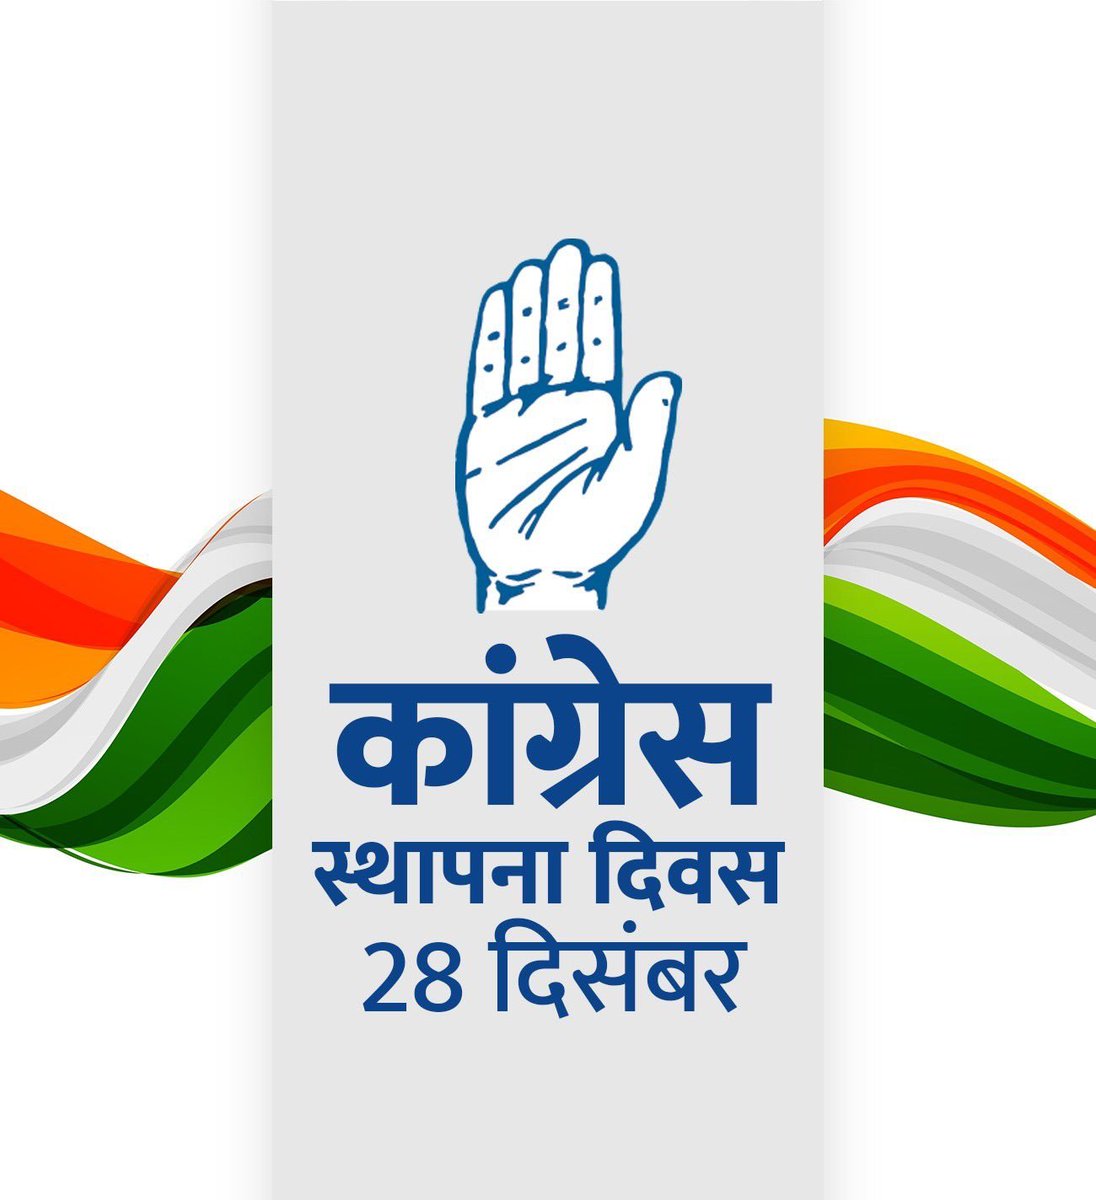 भारतीय राष्ट्रीय कांग्रेस के स्थापना दिवस की हार्दिक शुभकामनाएं।